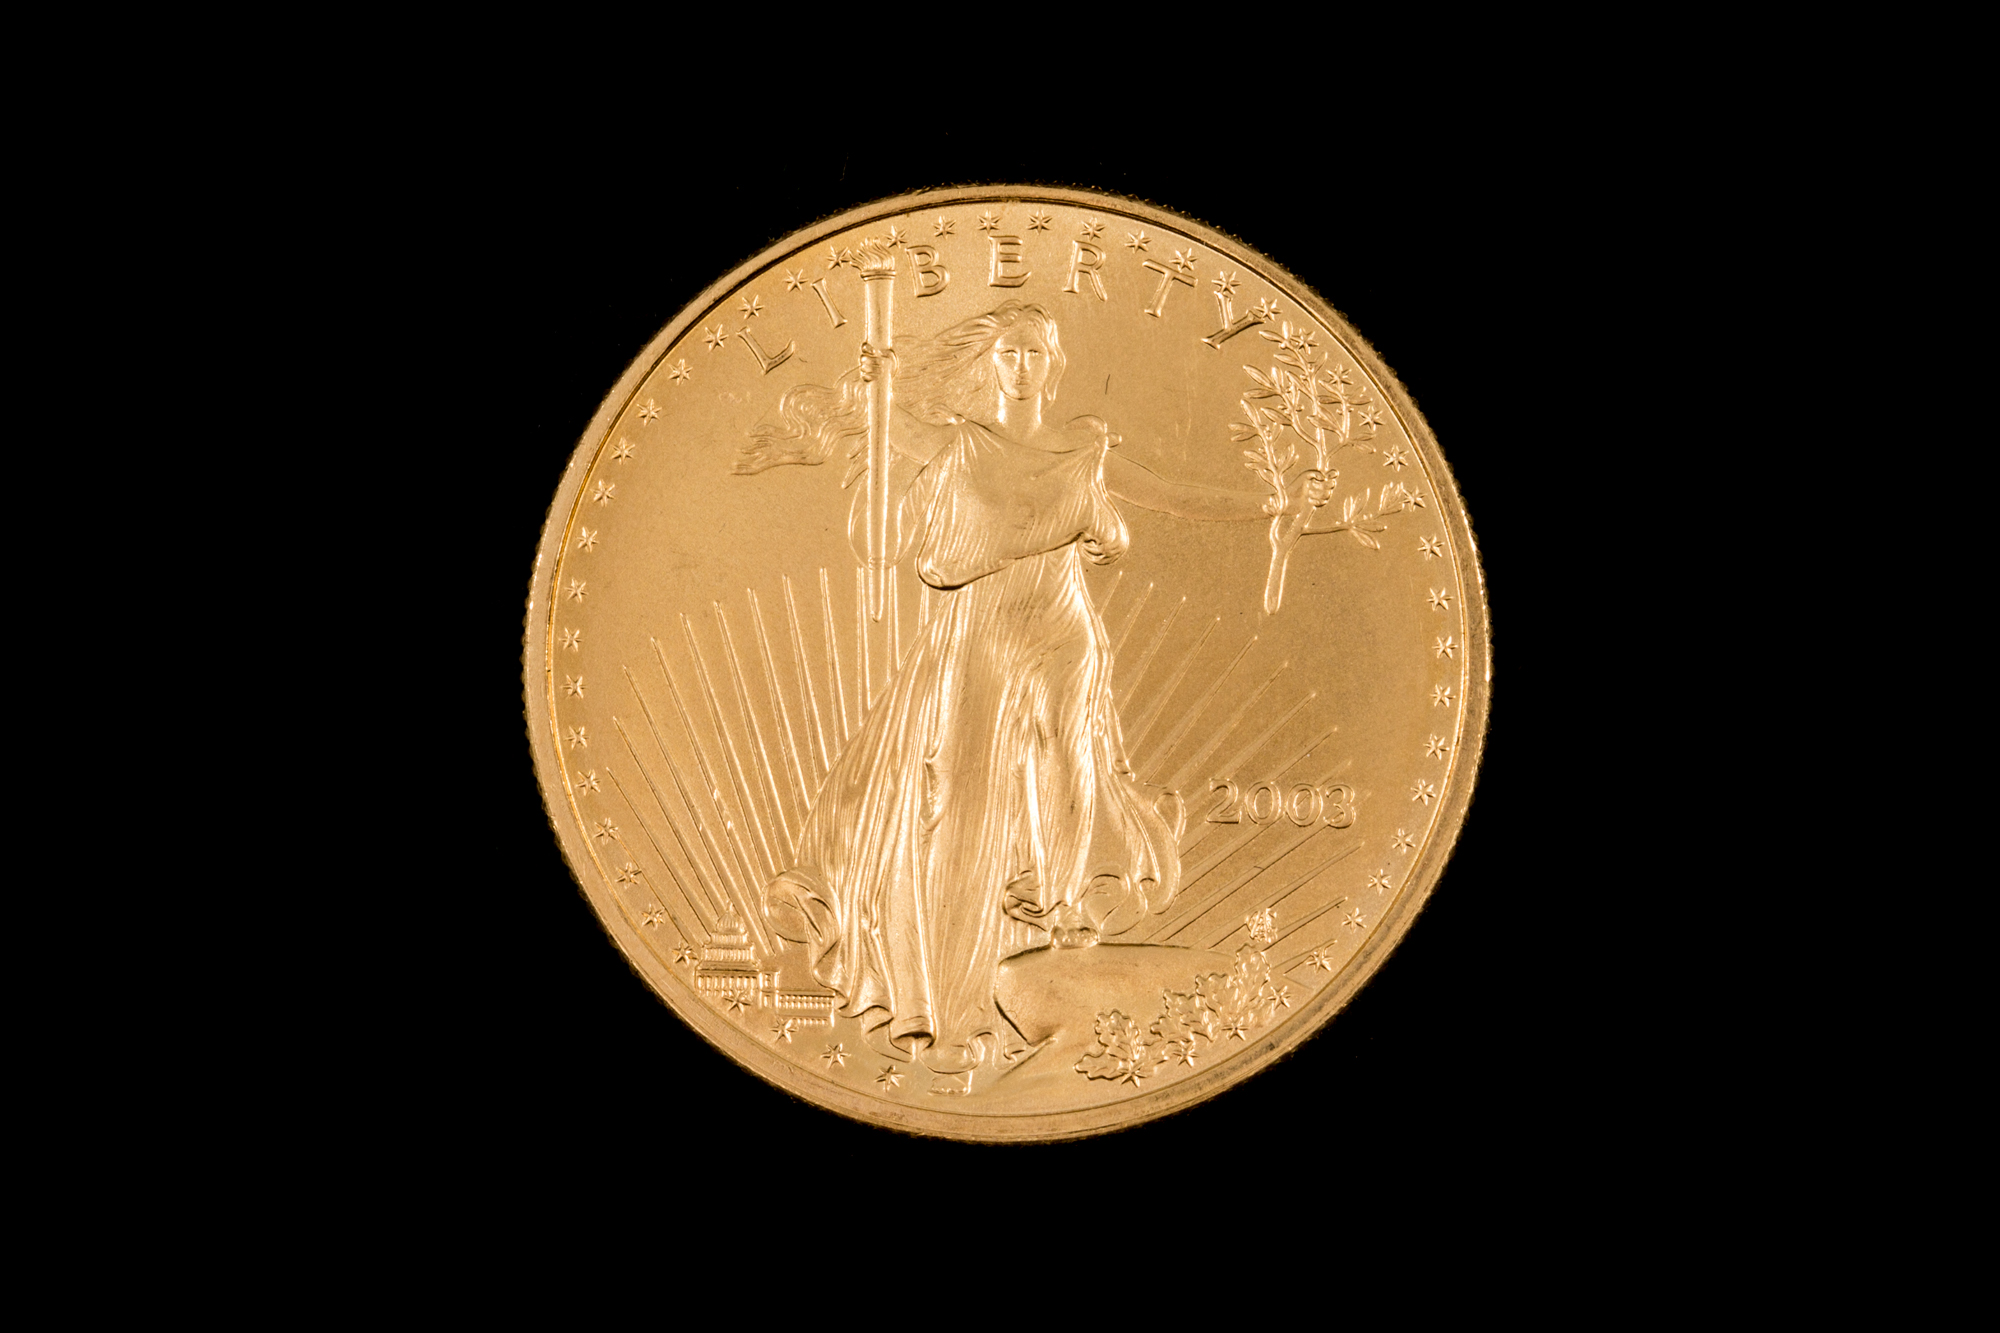 A 2003 US GOLD 1OZ $50 COIN